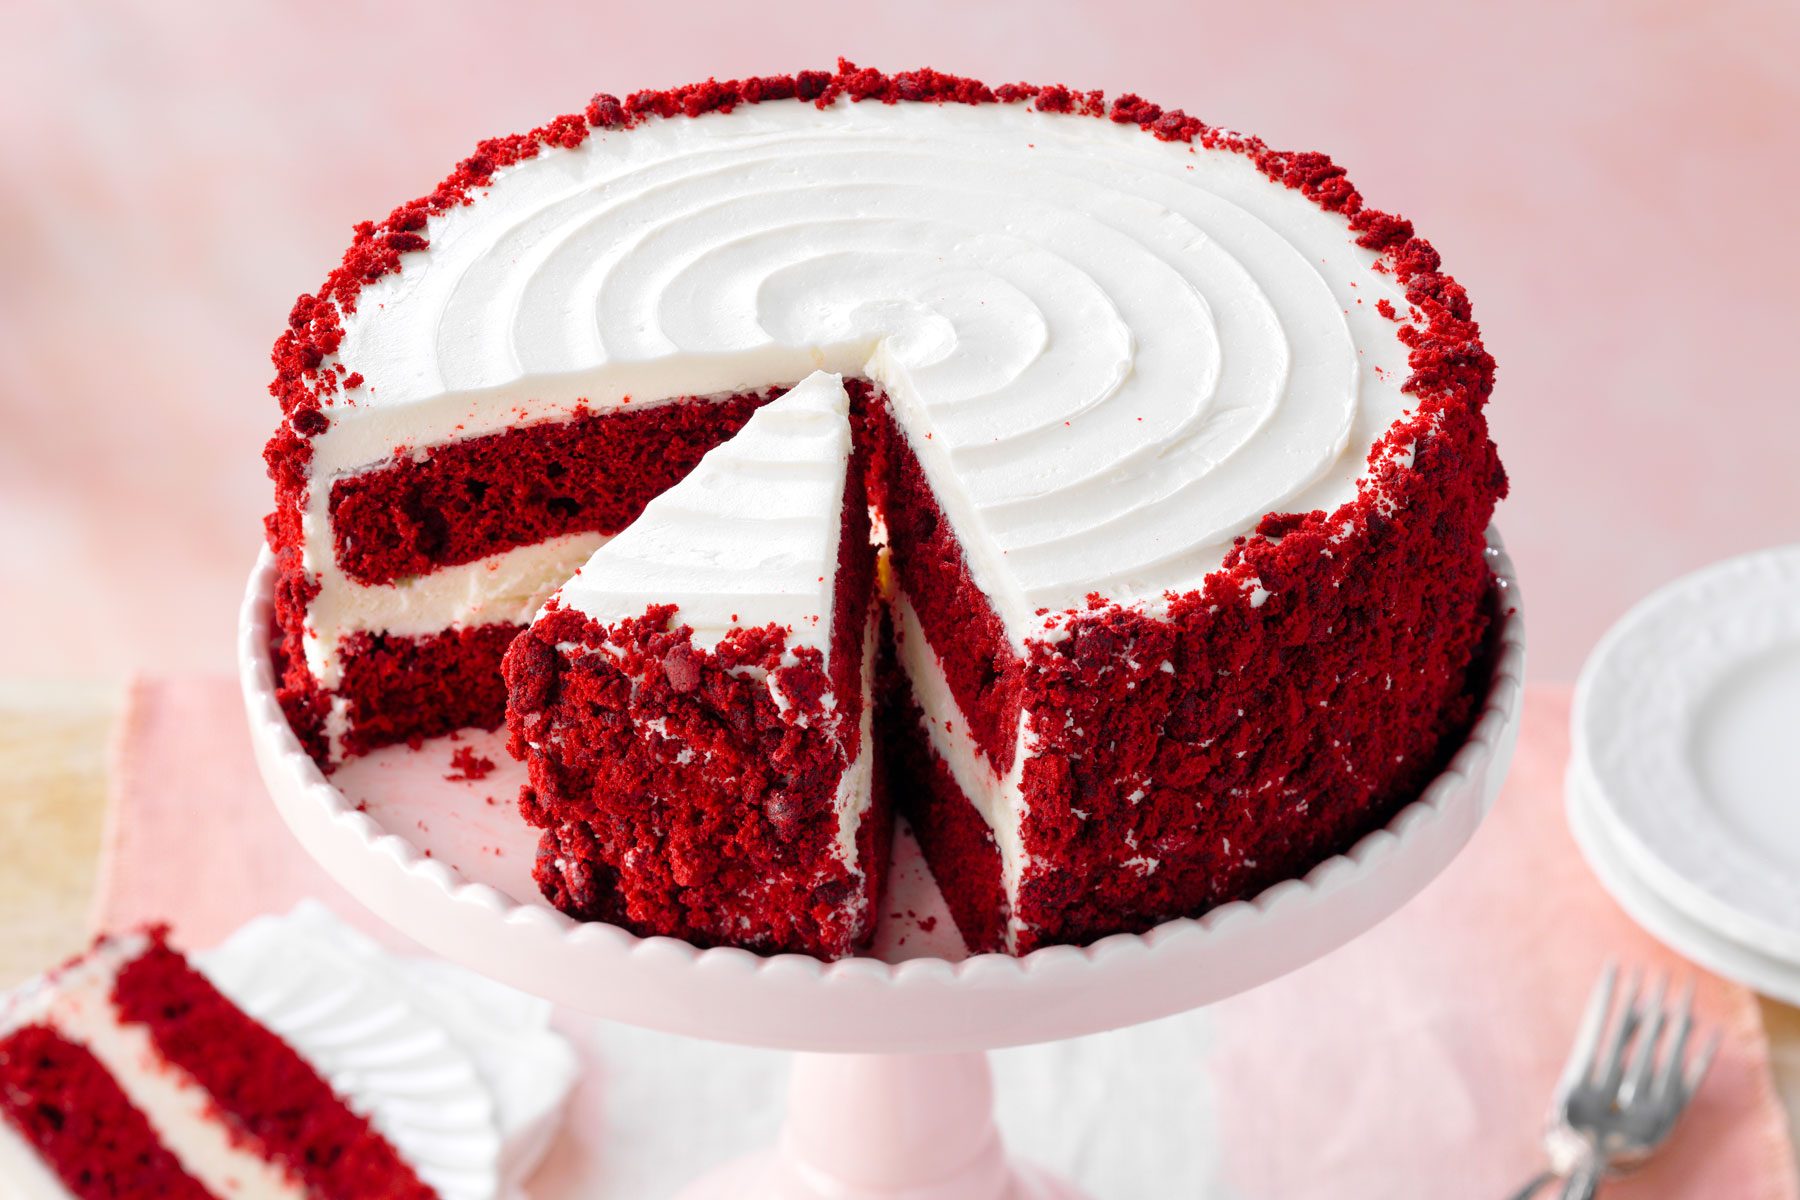  Red Velvet Cake Tohcomfb24 42588 P2 Md 09 12 3b